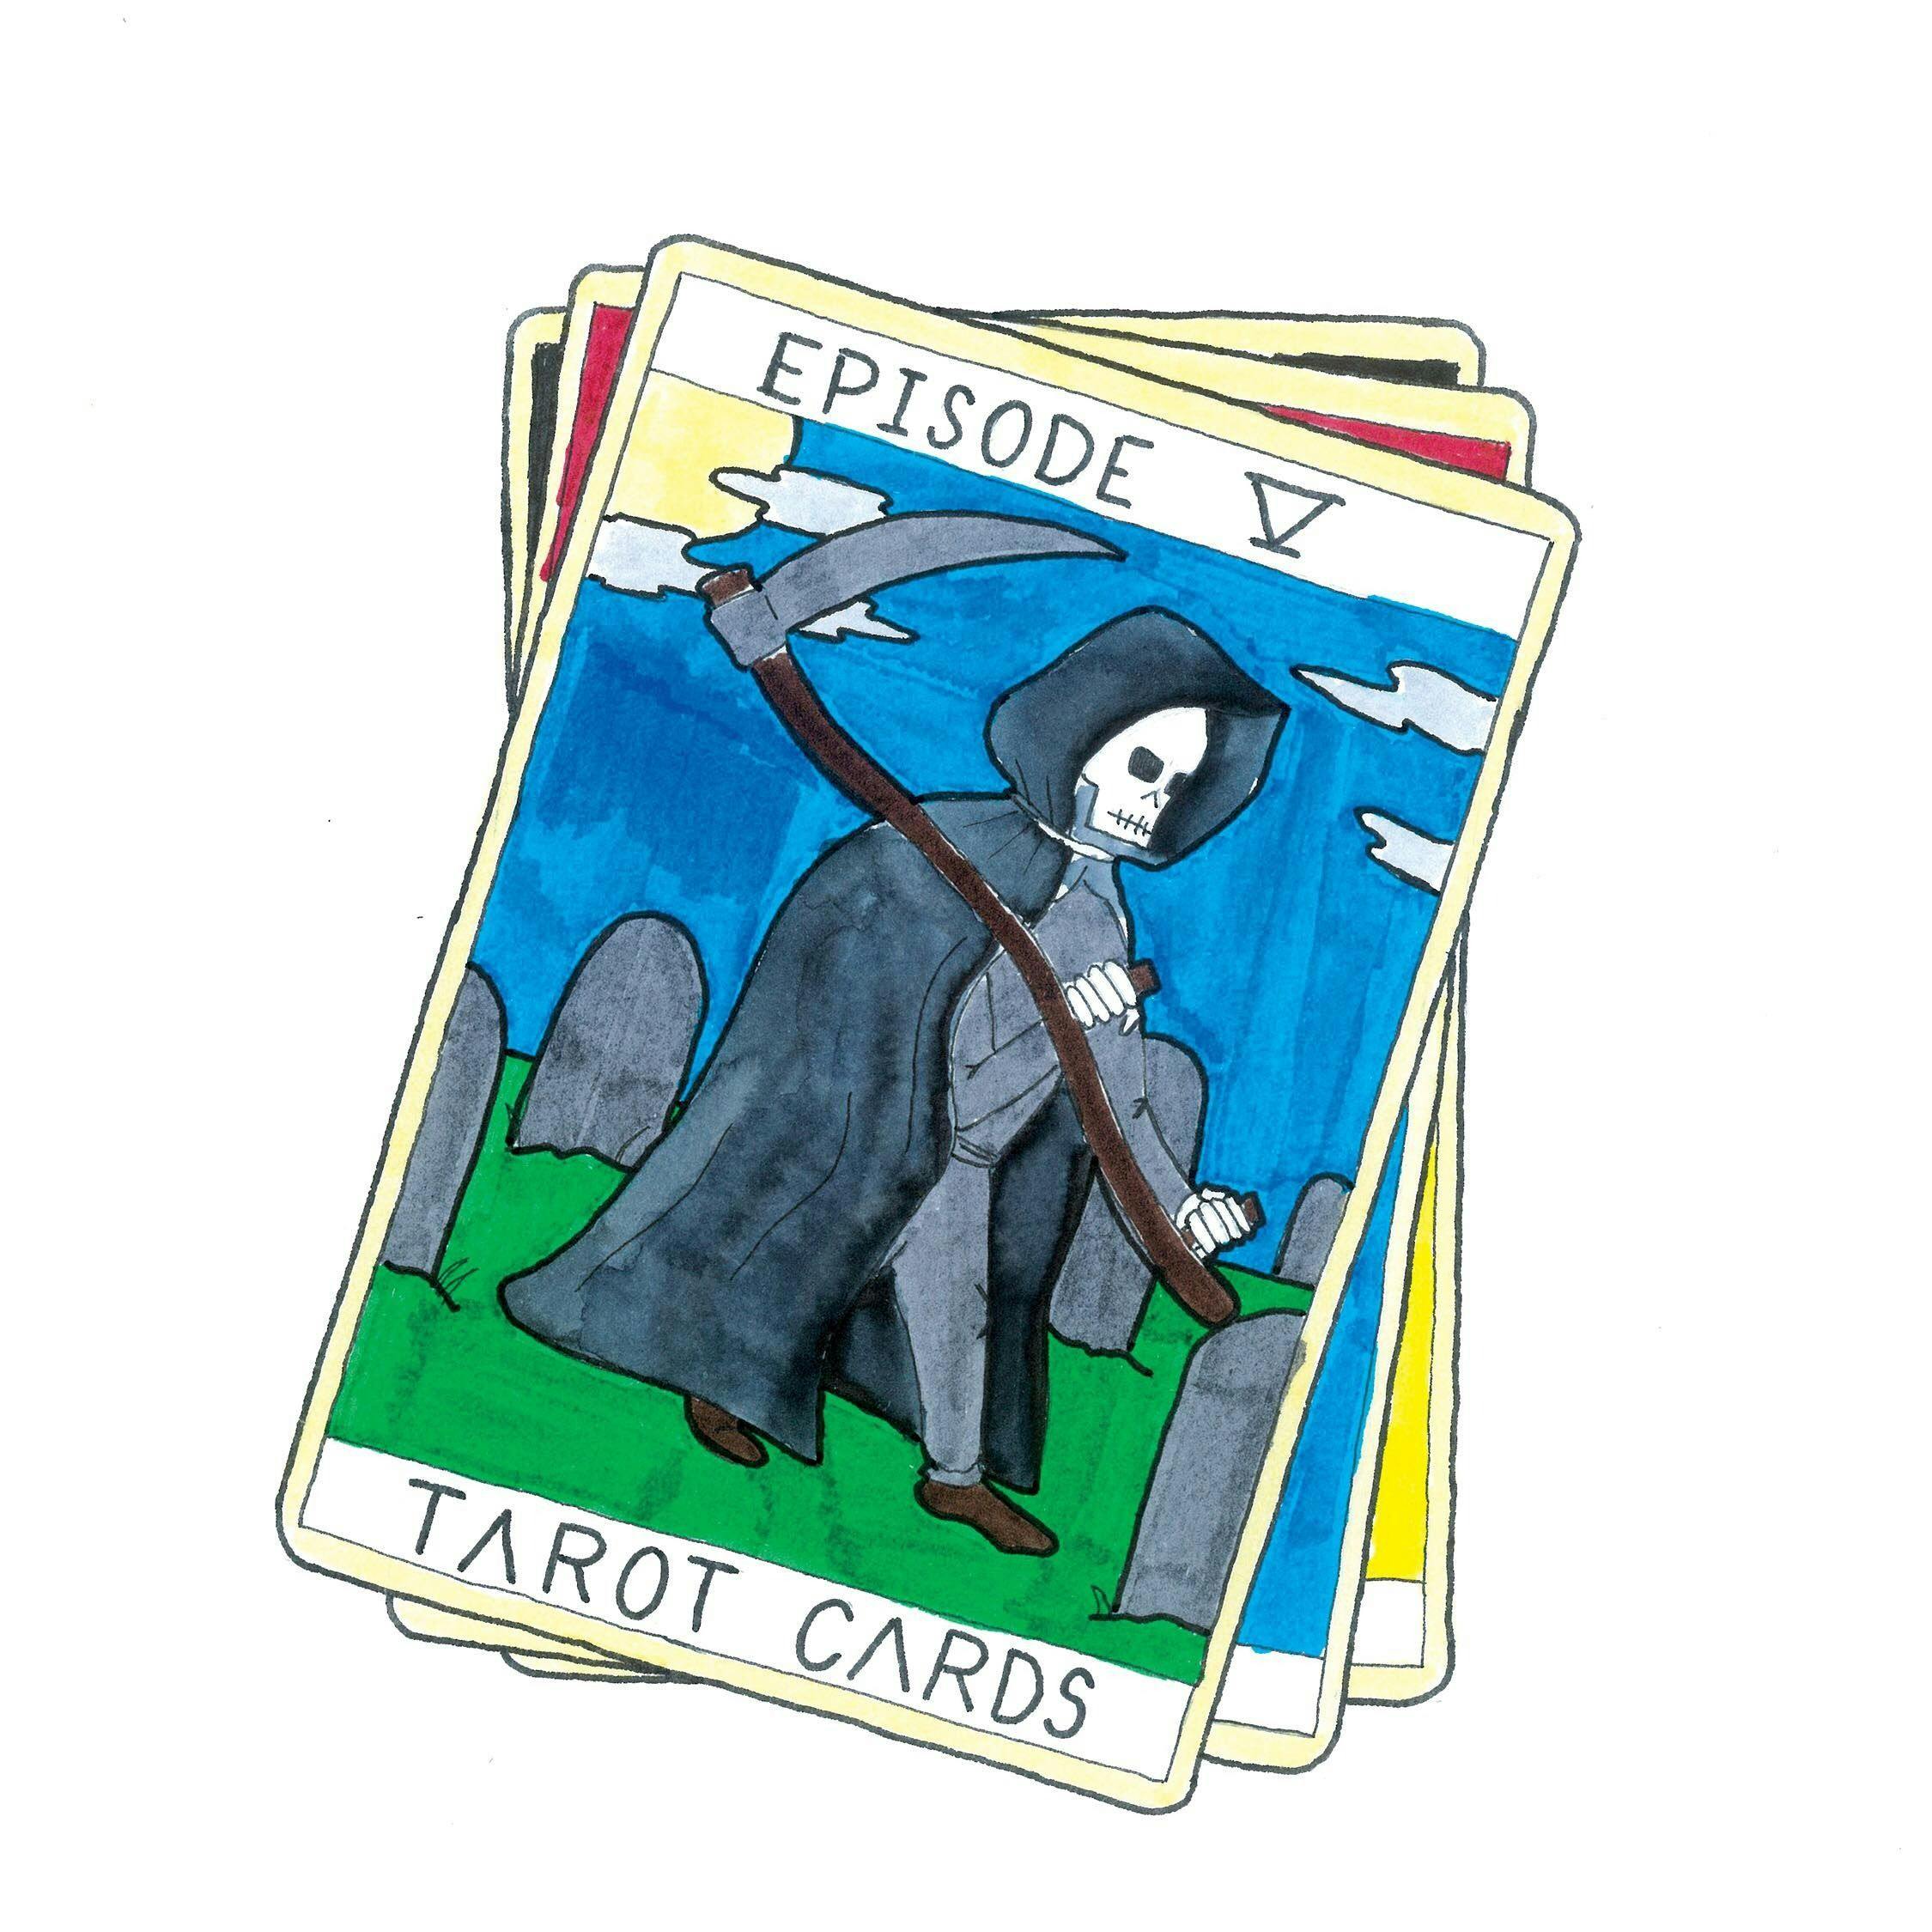 Episode 5: Tarot Cards